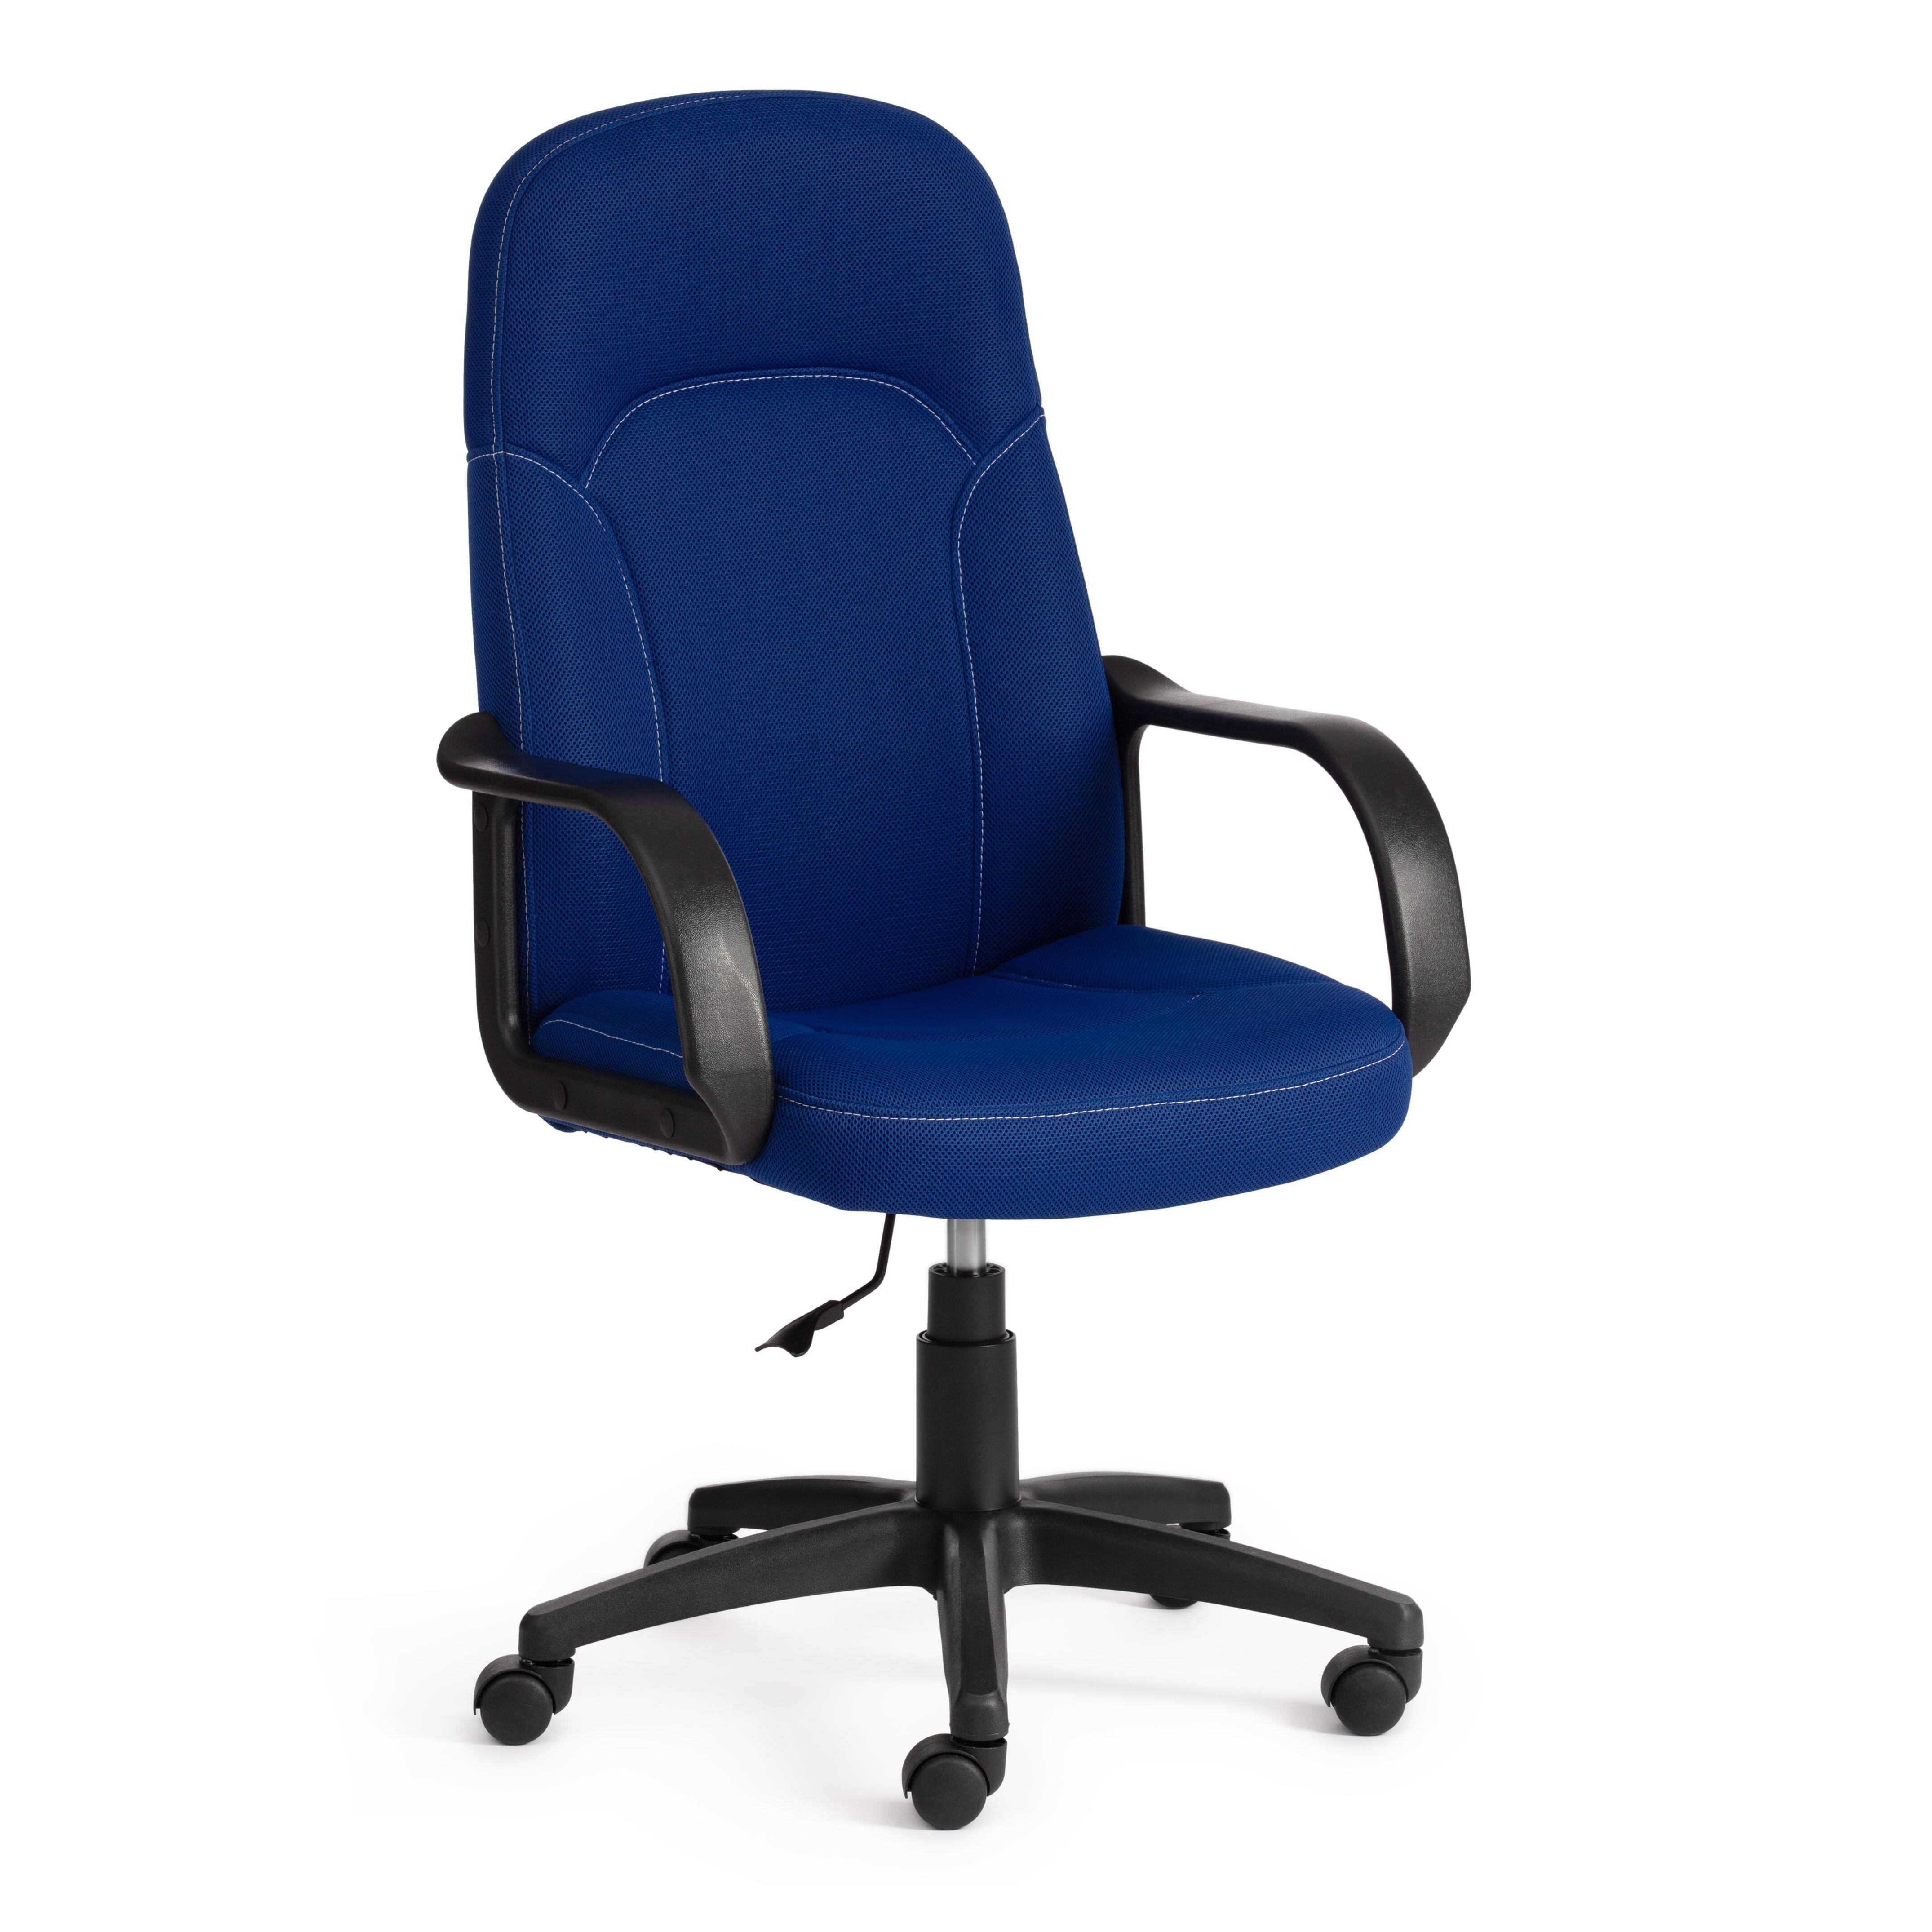 90563219 Офисное кресло parma ткань цвет синий STLM-0284380 TETCHAIR